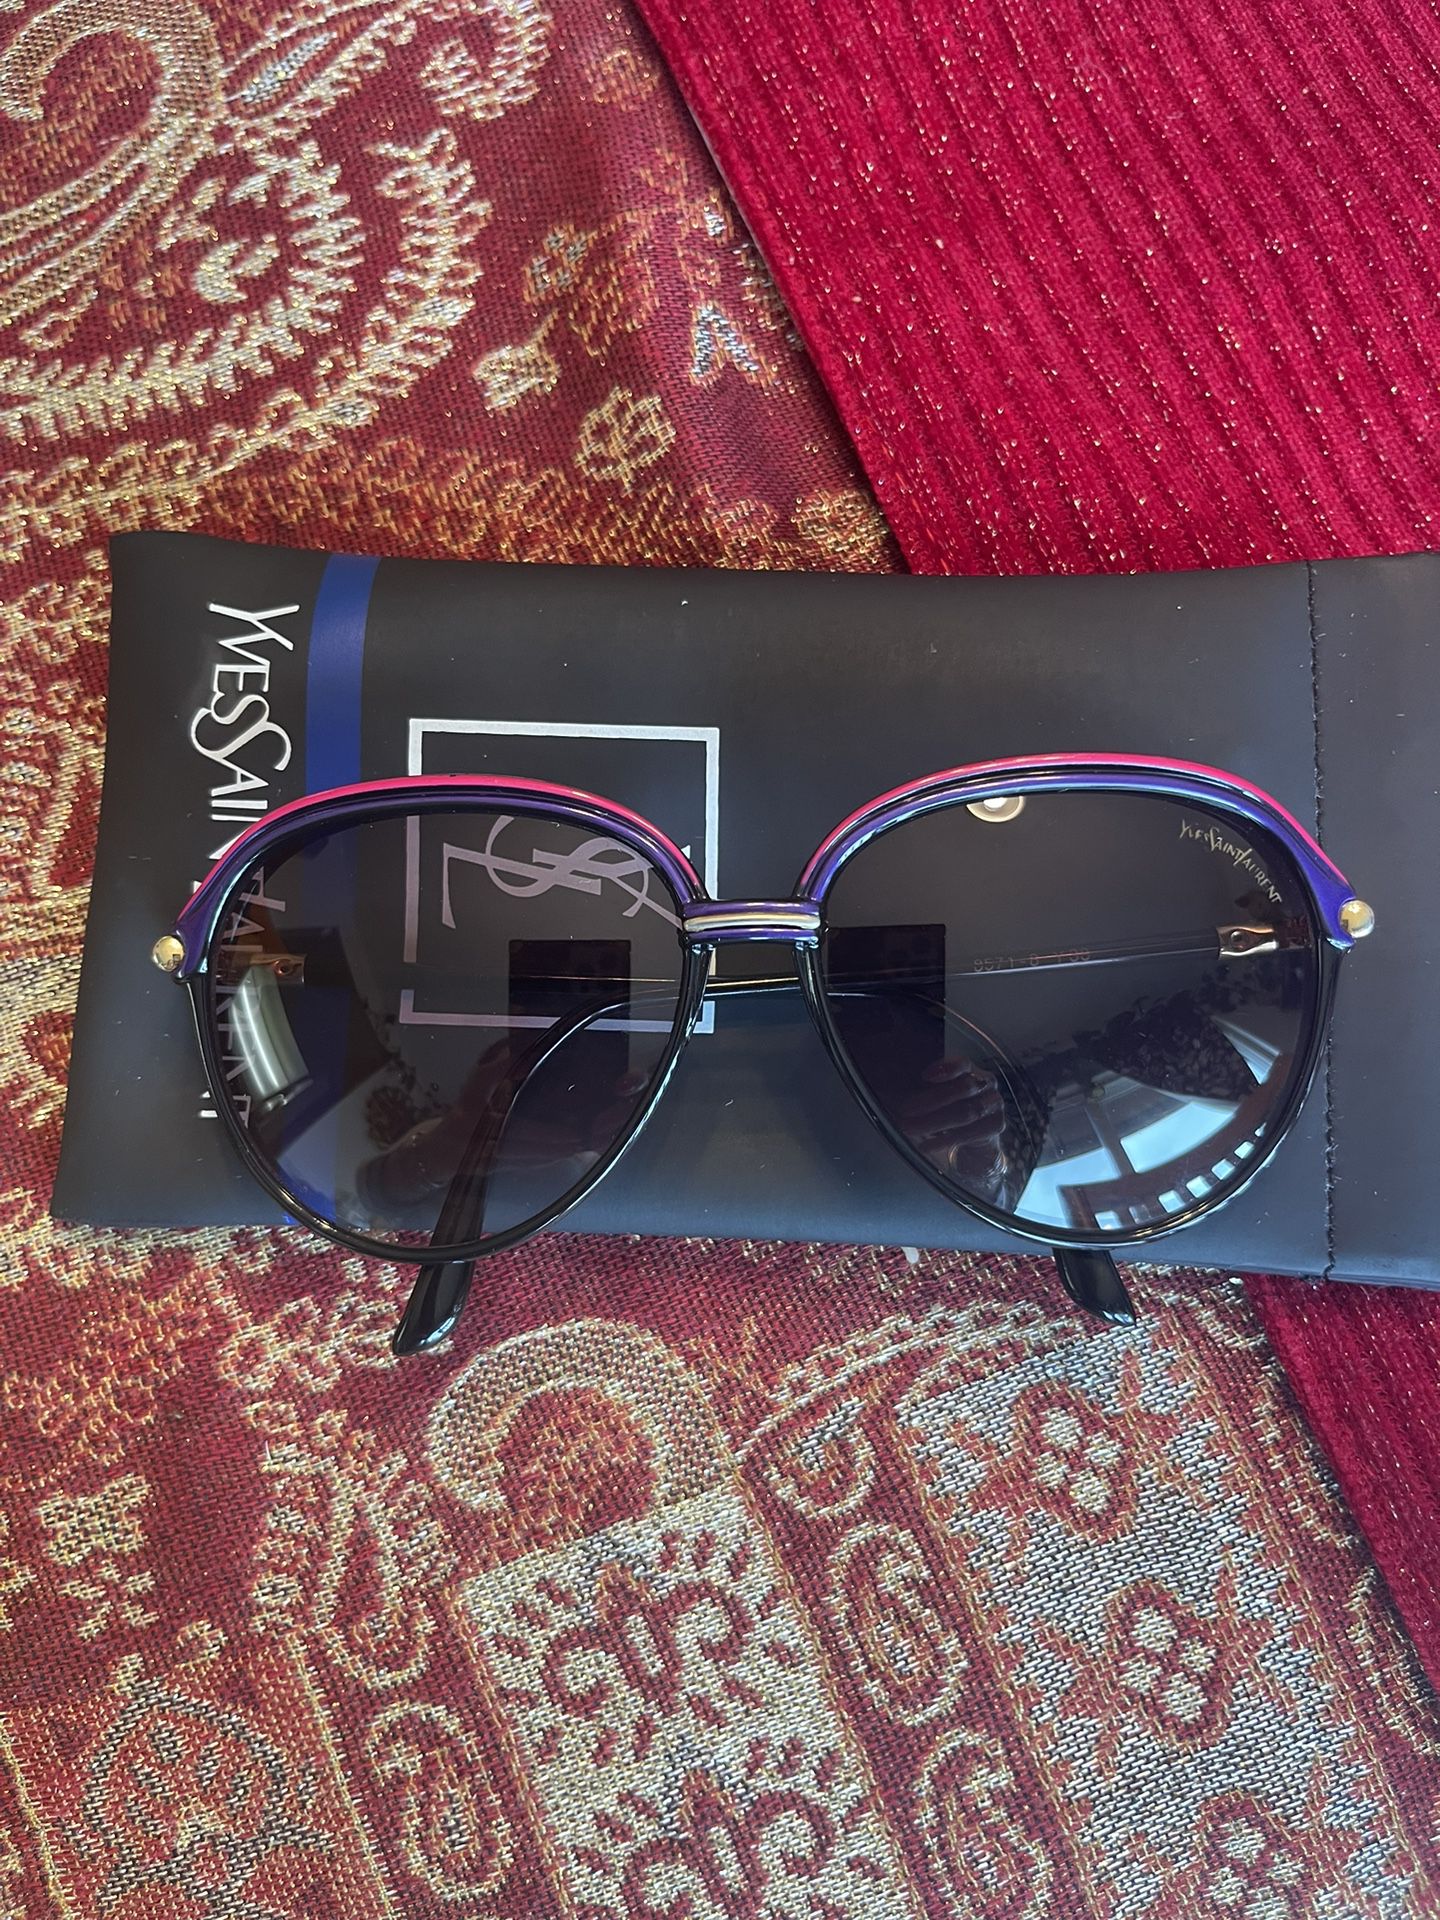 Ives Saint Lauren Sunglasses $200